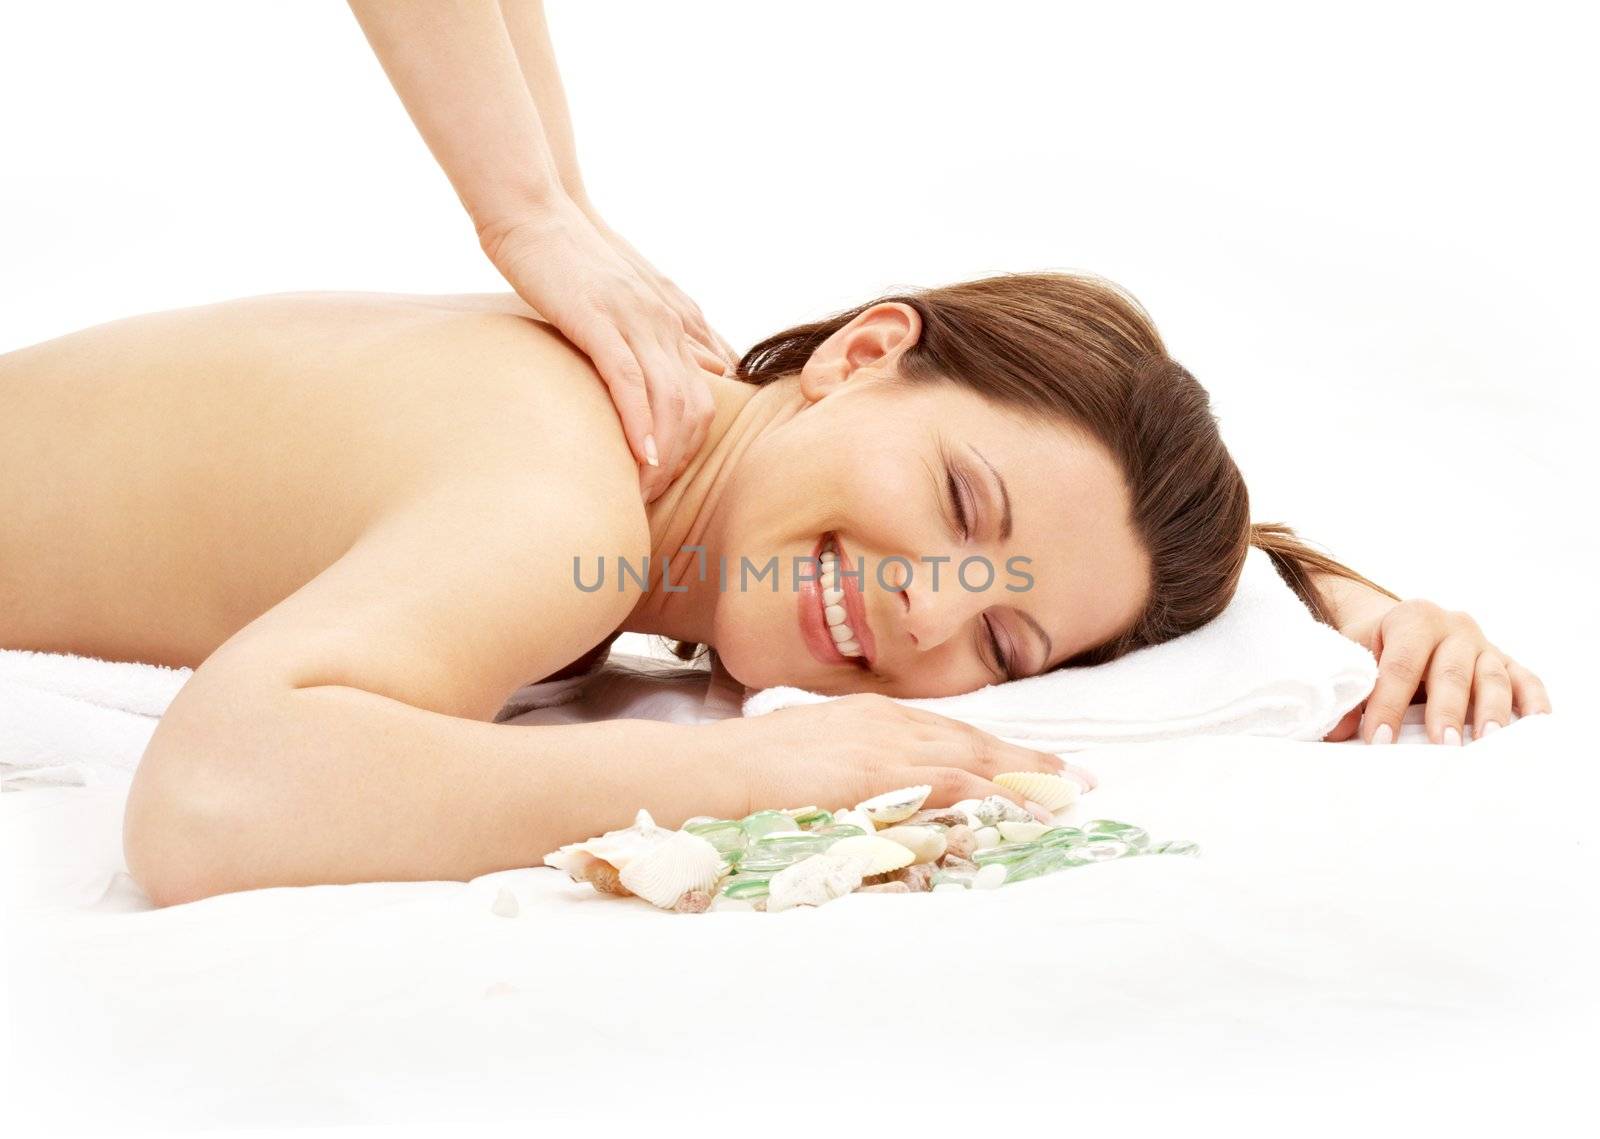 happy massage #2 by dolgachov